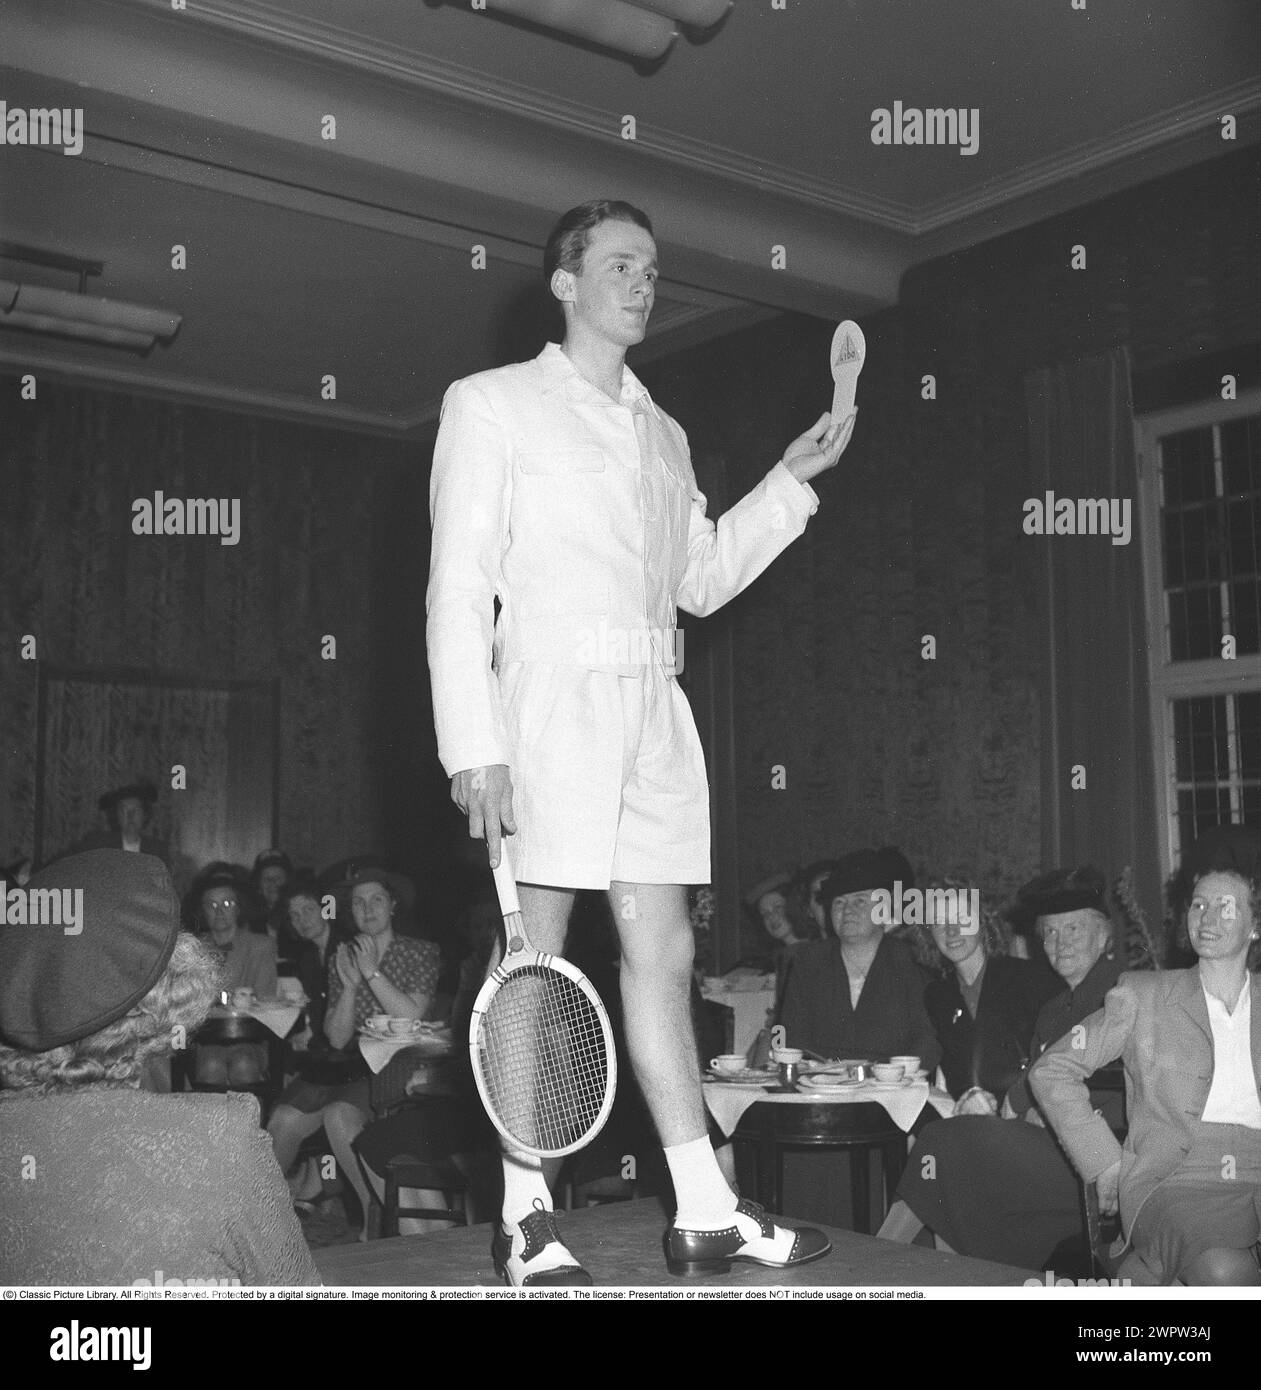 Défilé de mode dans les années 1940 Un jeune mannequin masculin aux cheveux foncés à un défilé de mode montre une paire de pantalons de tennis tendance et une veste blanche assortie avec une raquette de tennis à la main. Le public entièrement féminin voit le vêtement et l'homme de haut en bas. 1946 Kristoffersson ref U1-1 Banque D'Images